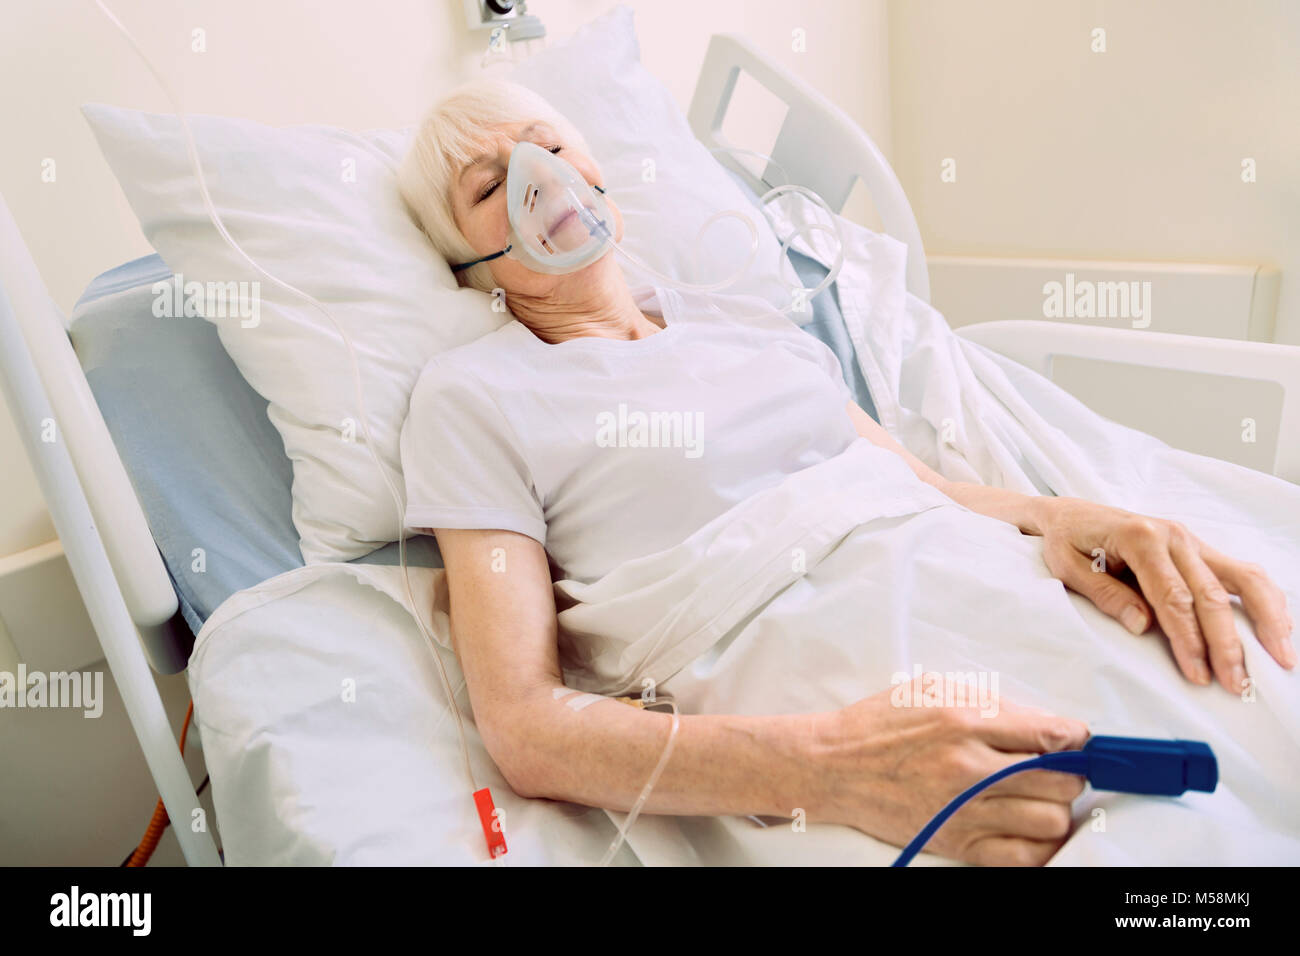 Épuisé woman Lying in Bed avec masque respiratoire Banque D'Images